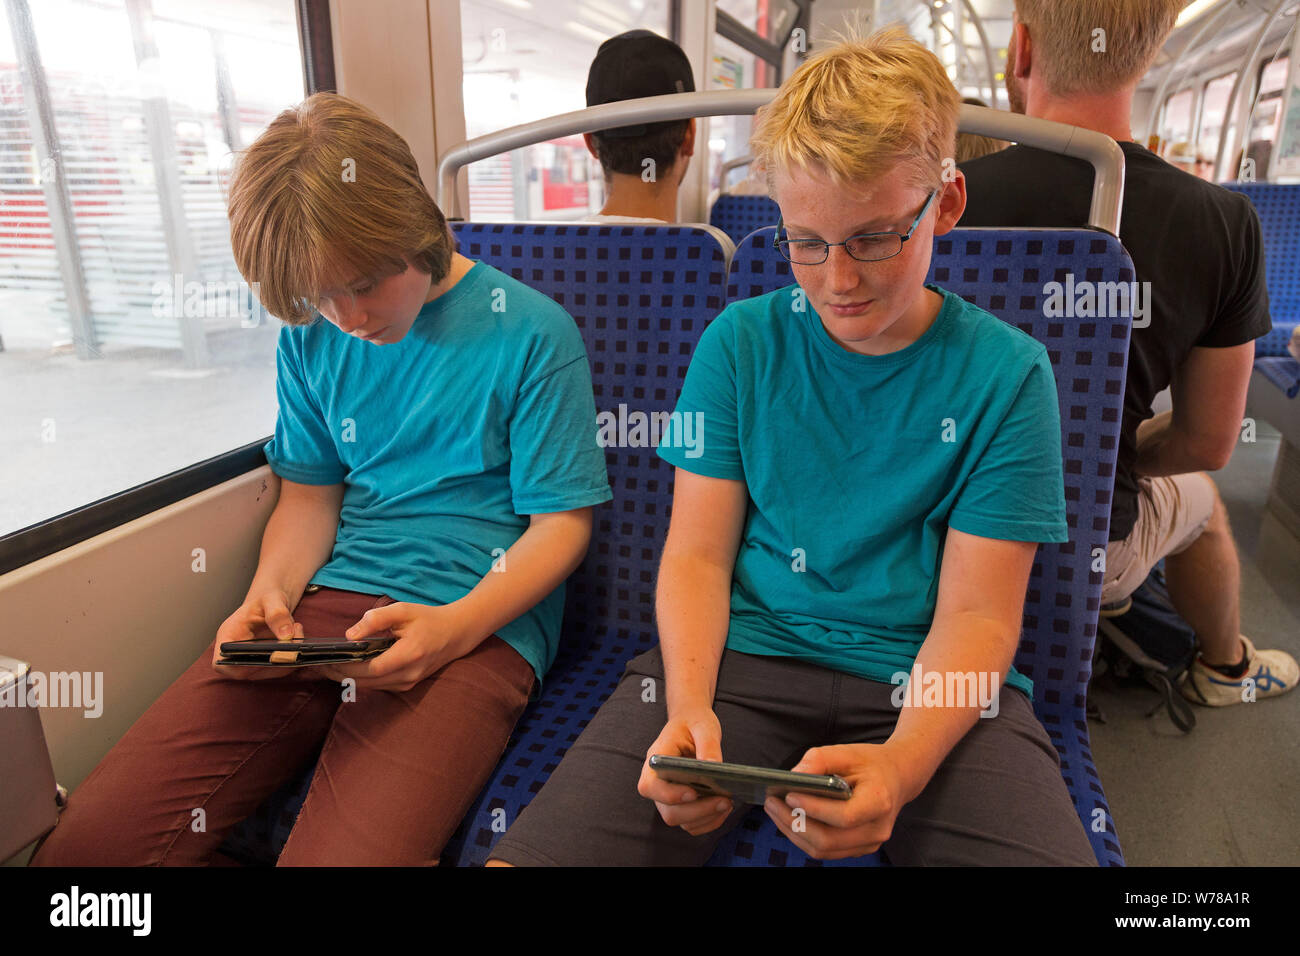 Adolescents jouant avec les téléphones mobiles sur le réseau express régional, Hambourg, Allemagne Banque D'Images